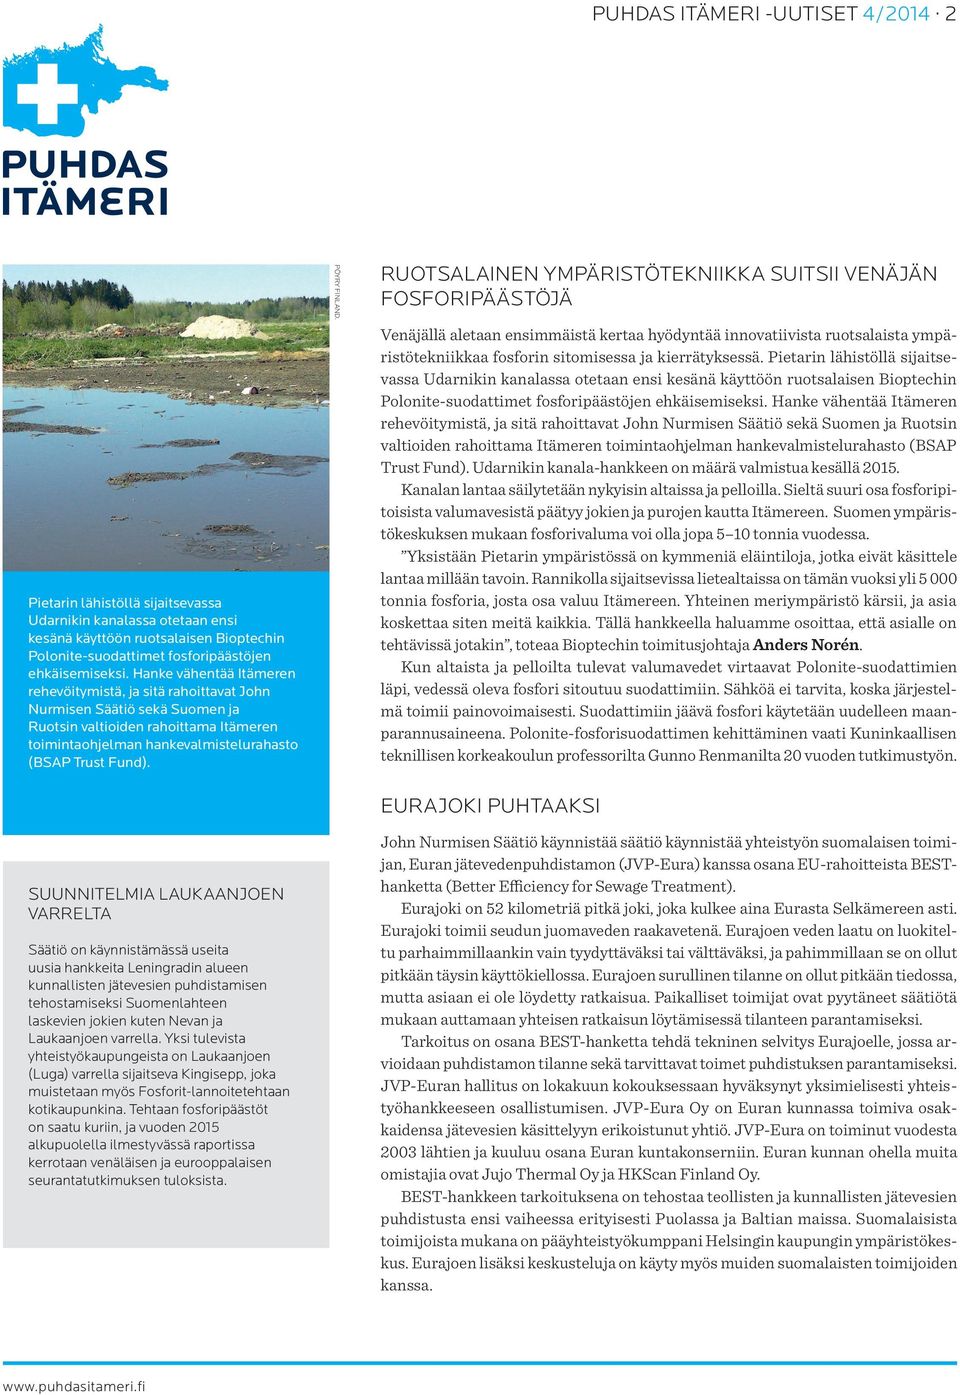 Suunnitelmia Laukaanjoen varrelta Säätiö on käynnistämässä useita uusia hankkeita Leningradin alueen kunnallisten jätevesien puhdistamisen tehostamiseksi Suomenlahteen laskevien jokien kuten Nevan ja